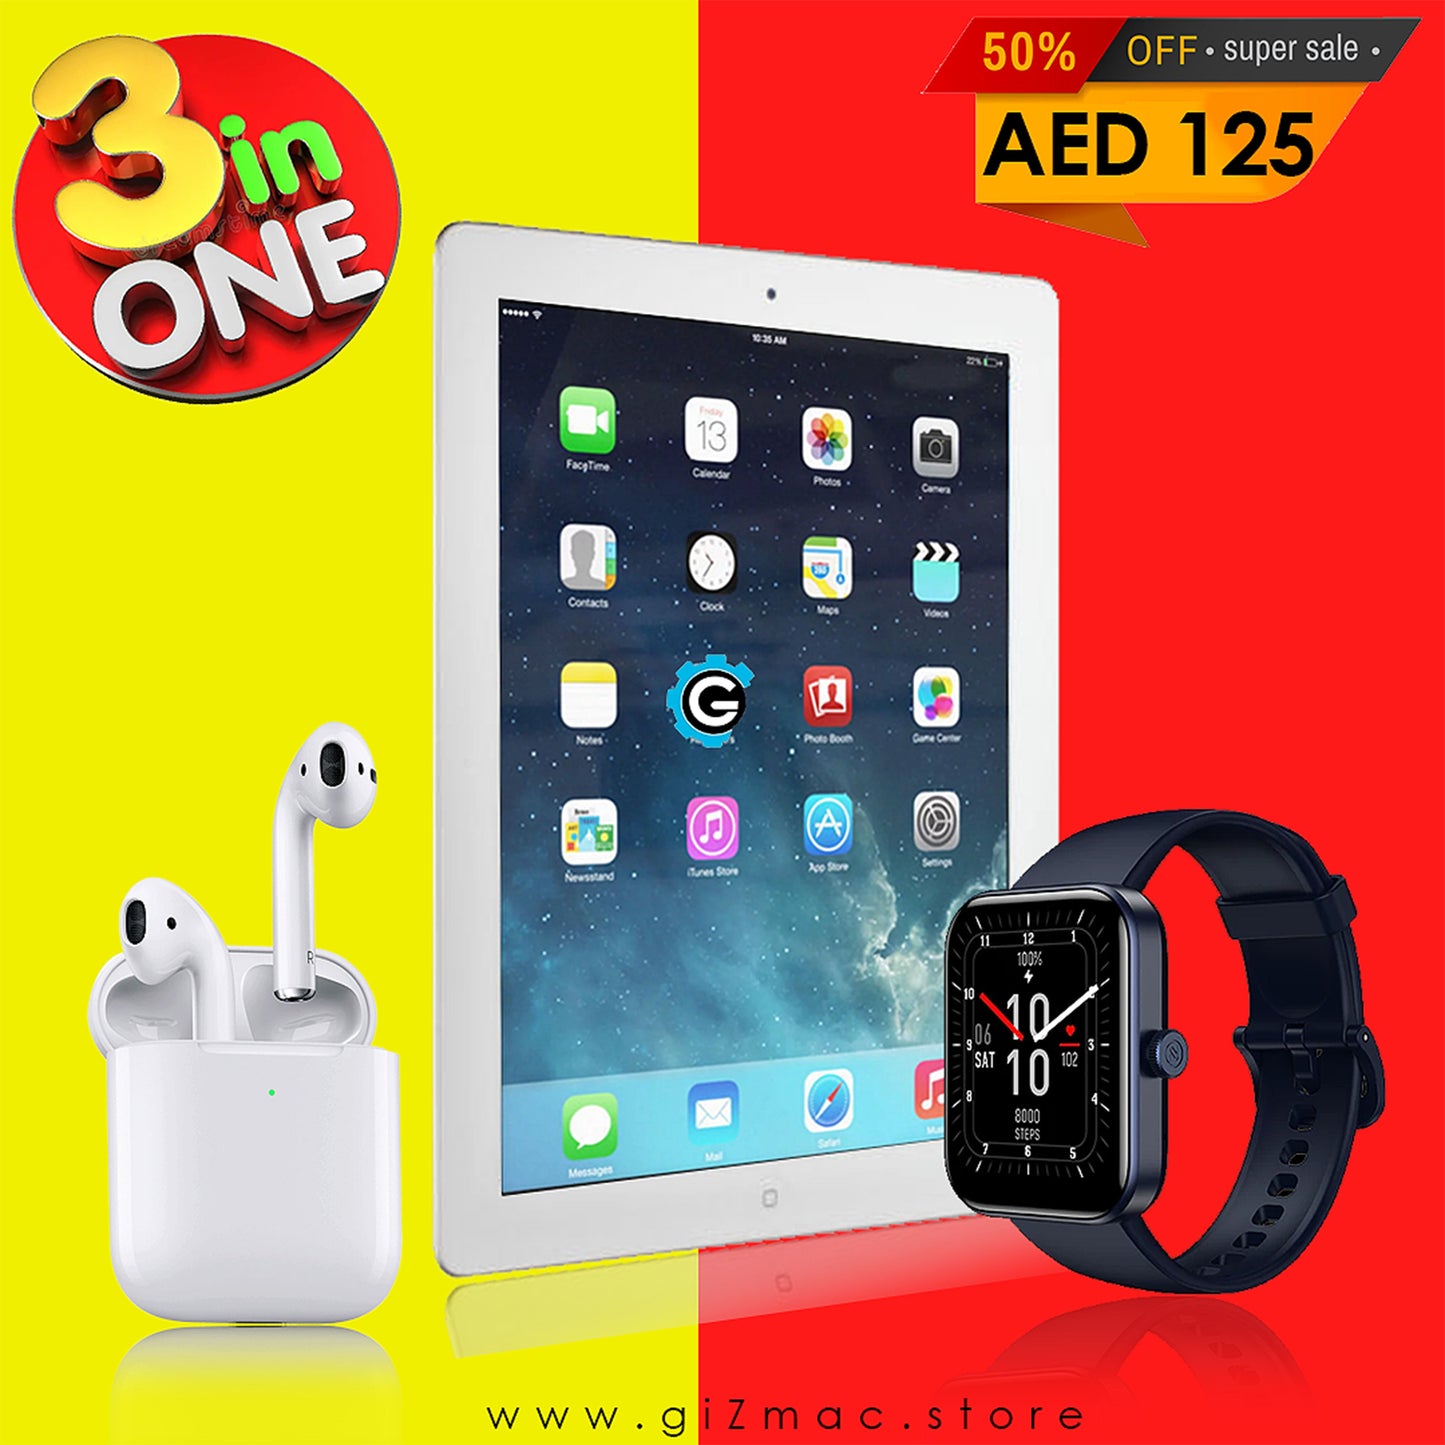 3in1 Offer Tablet + Smartwatch + Earpods